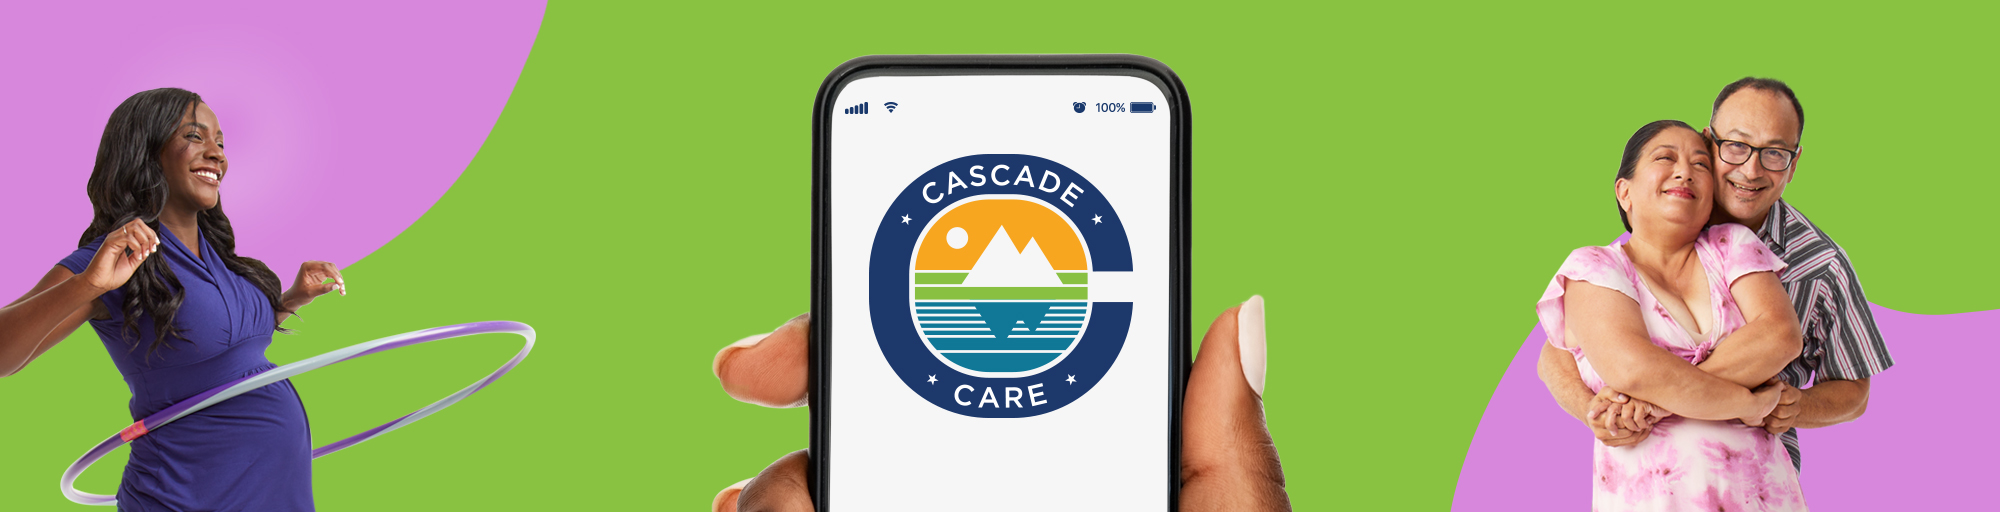 Una mujer haciendo hula hoop, un teléfono inteligente con el logotipo de Cascade Care y una pareja sonriente sobre un fondo verde y lavanda.